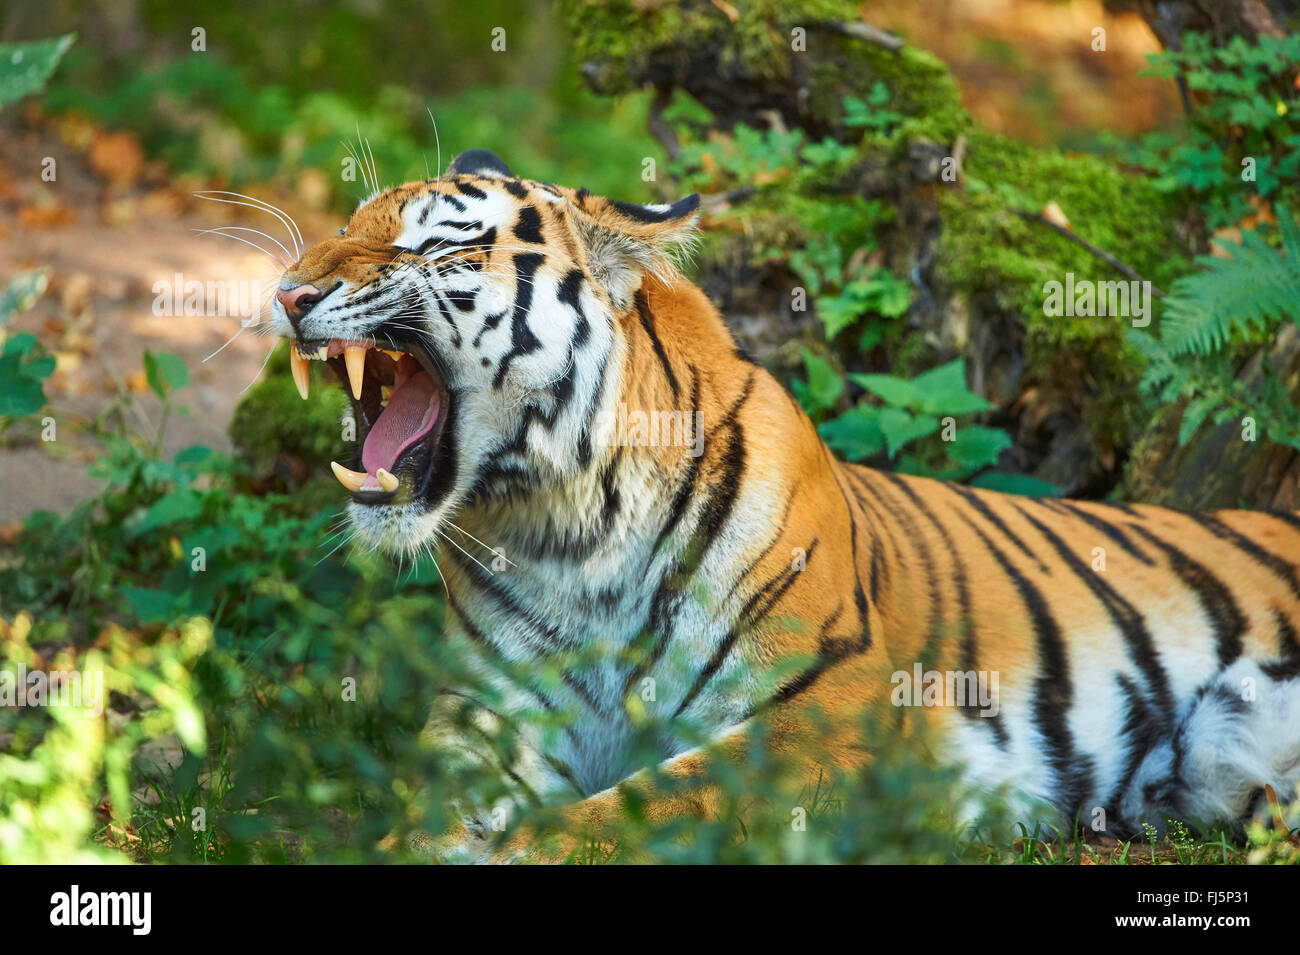 Siberian tiger, Amurian tiger (Panthera tigris altaica), roaring Stock Photo